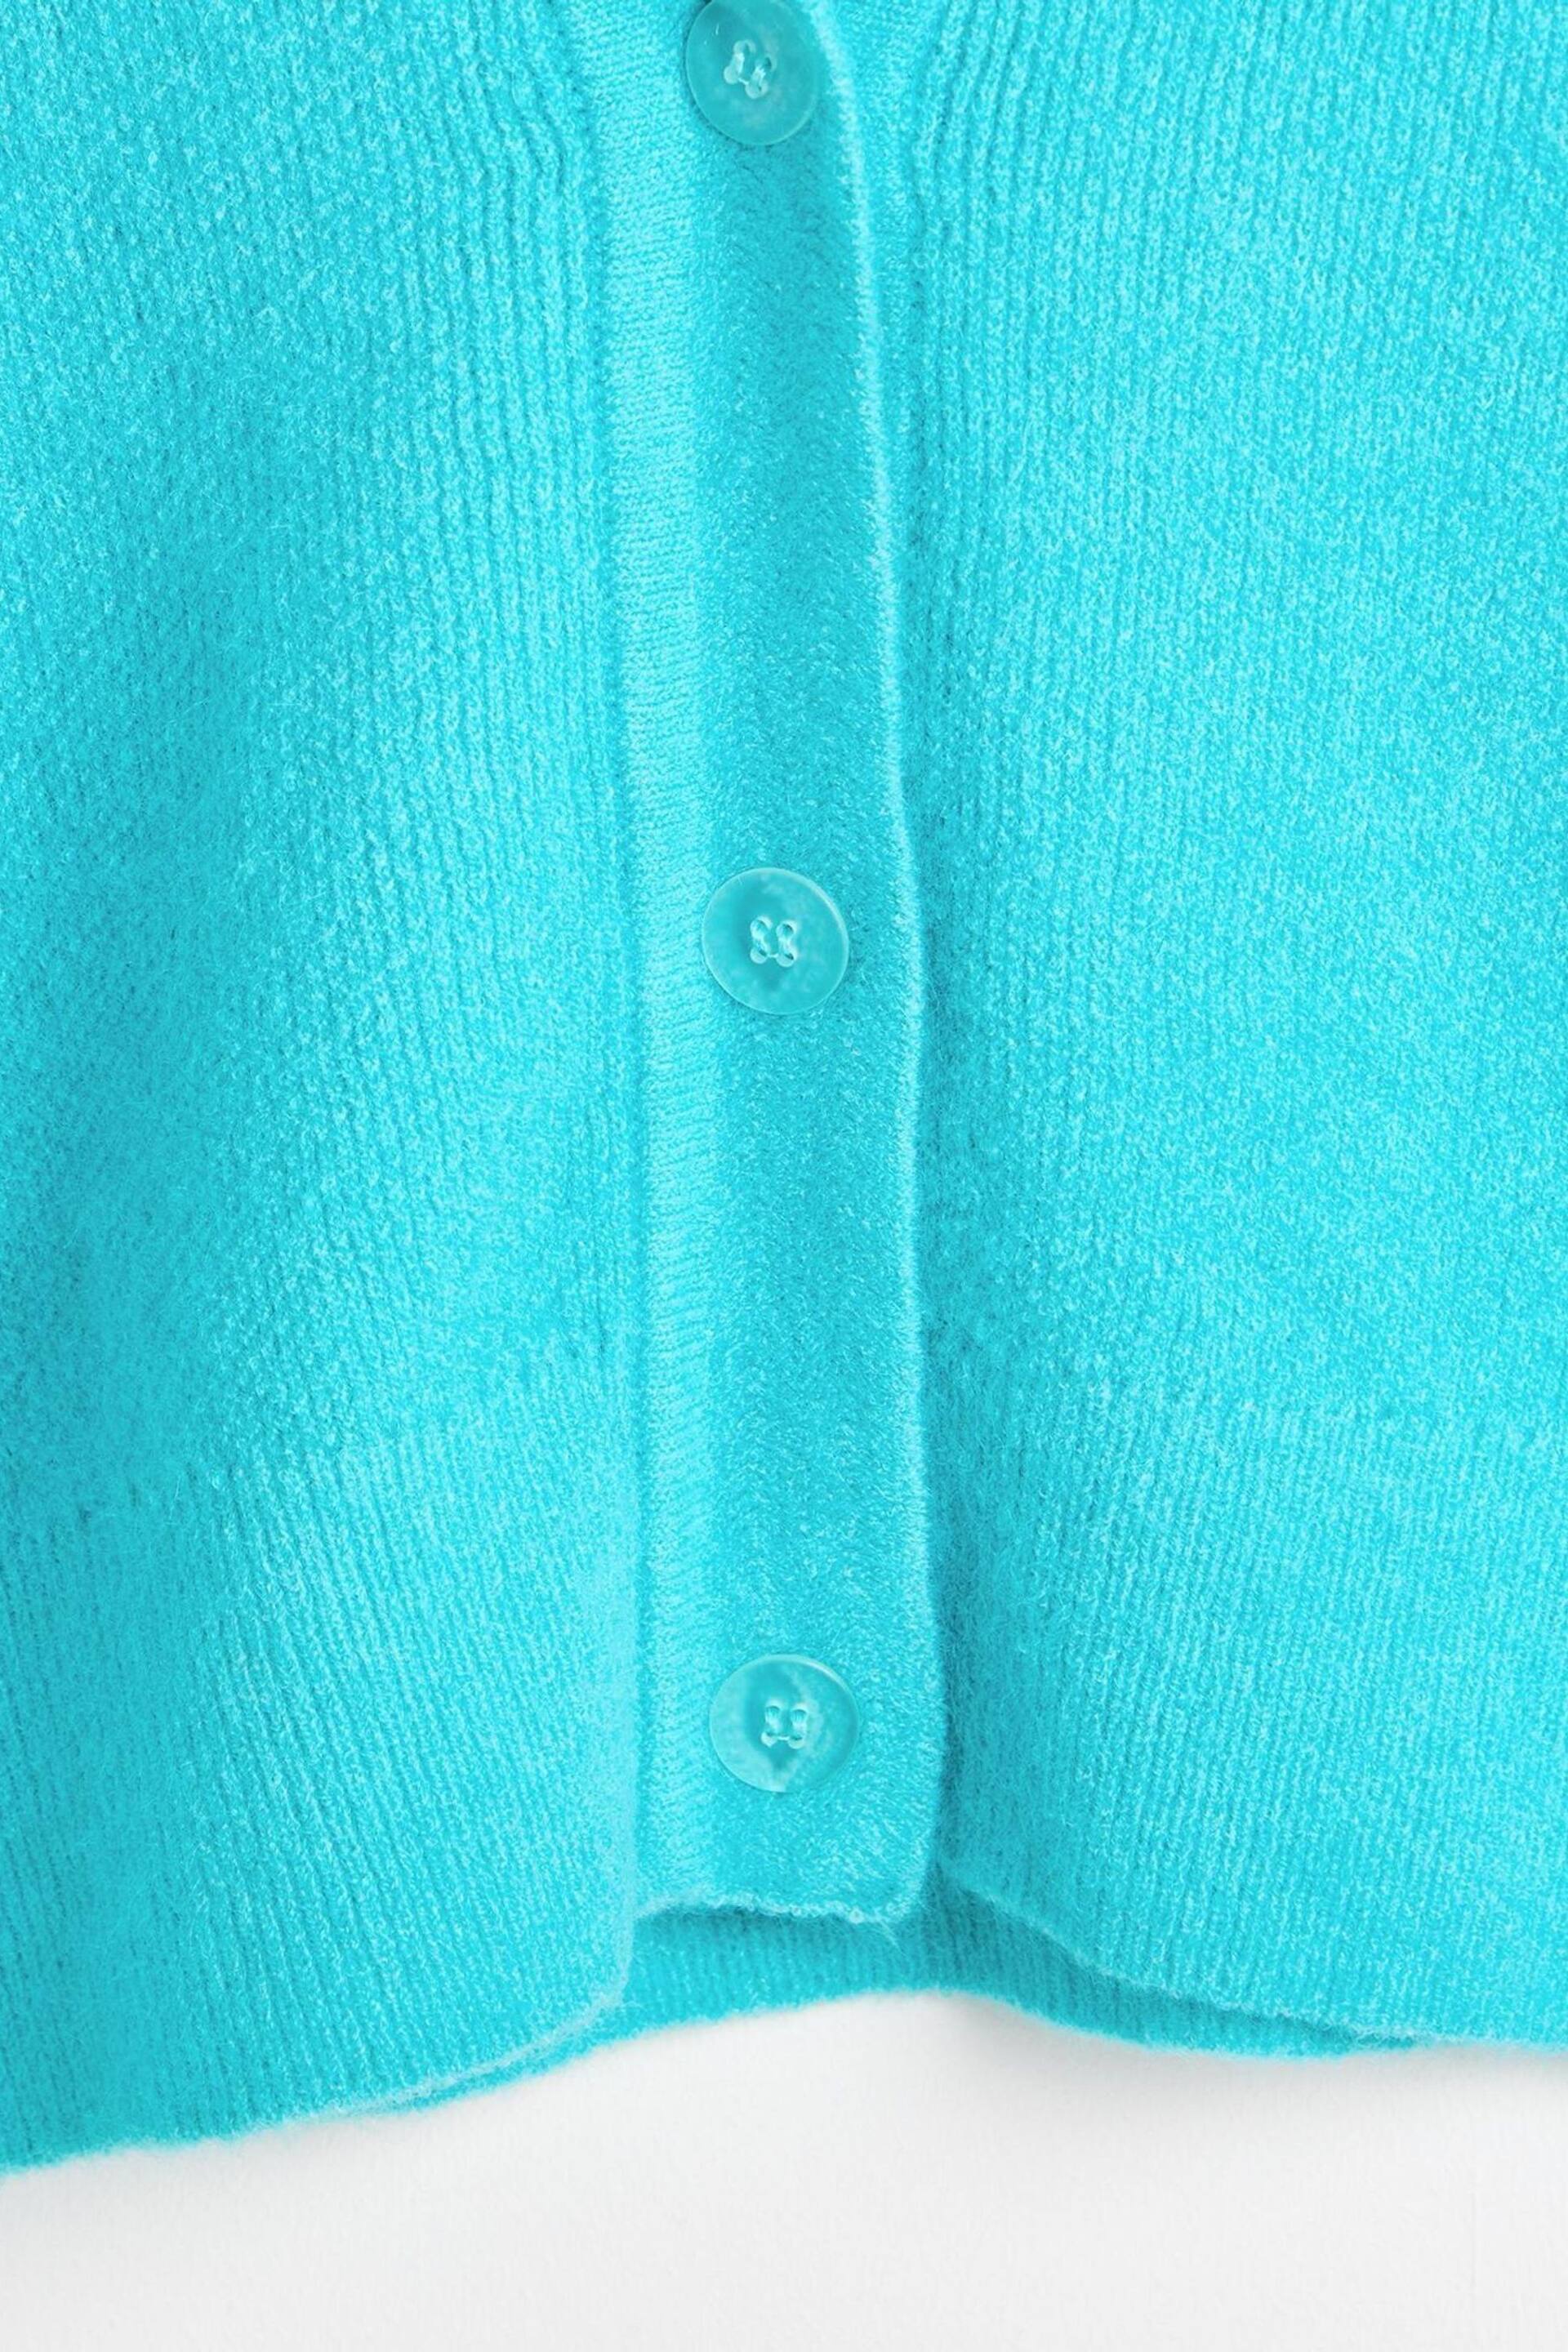 Oliver Bonas Blue Turquoise Knitted Cardigan - Image 9 of 9